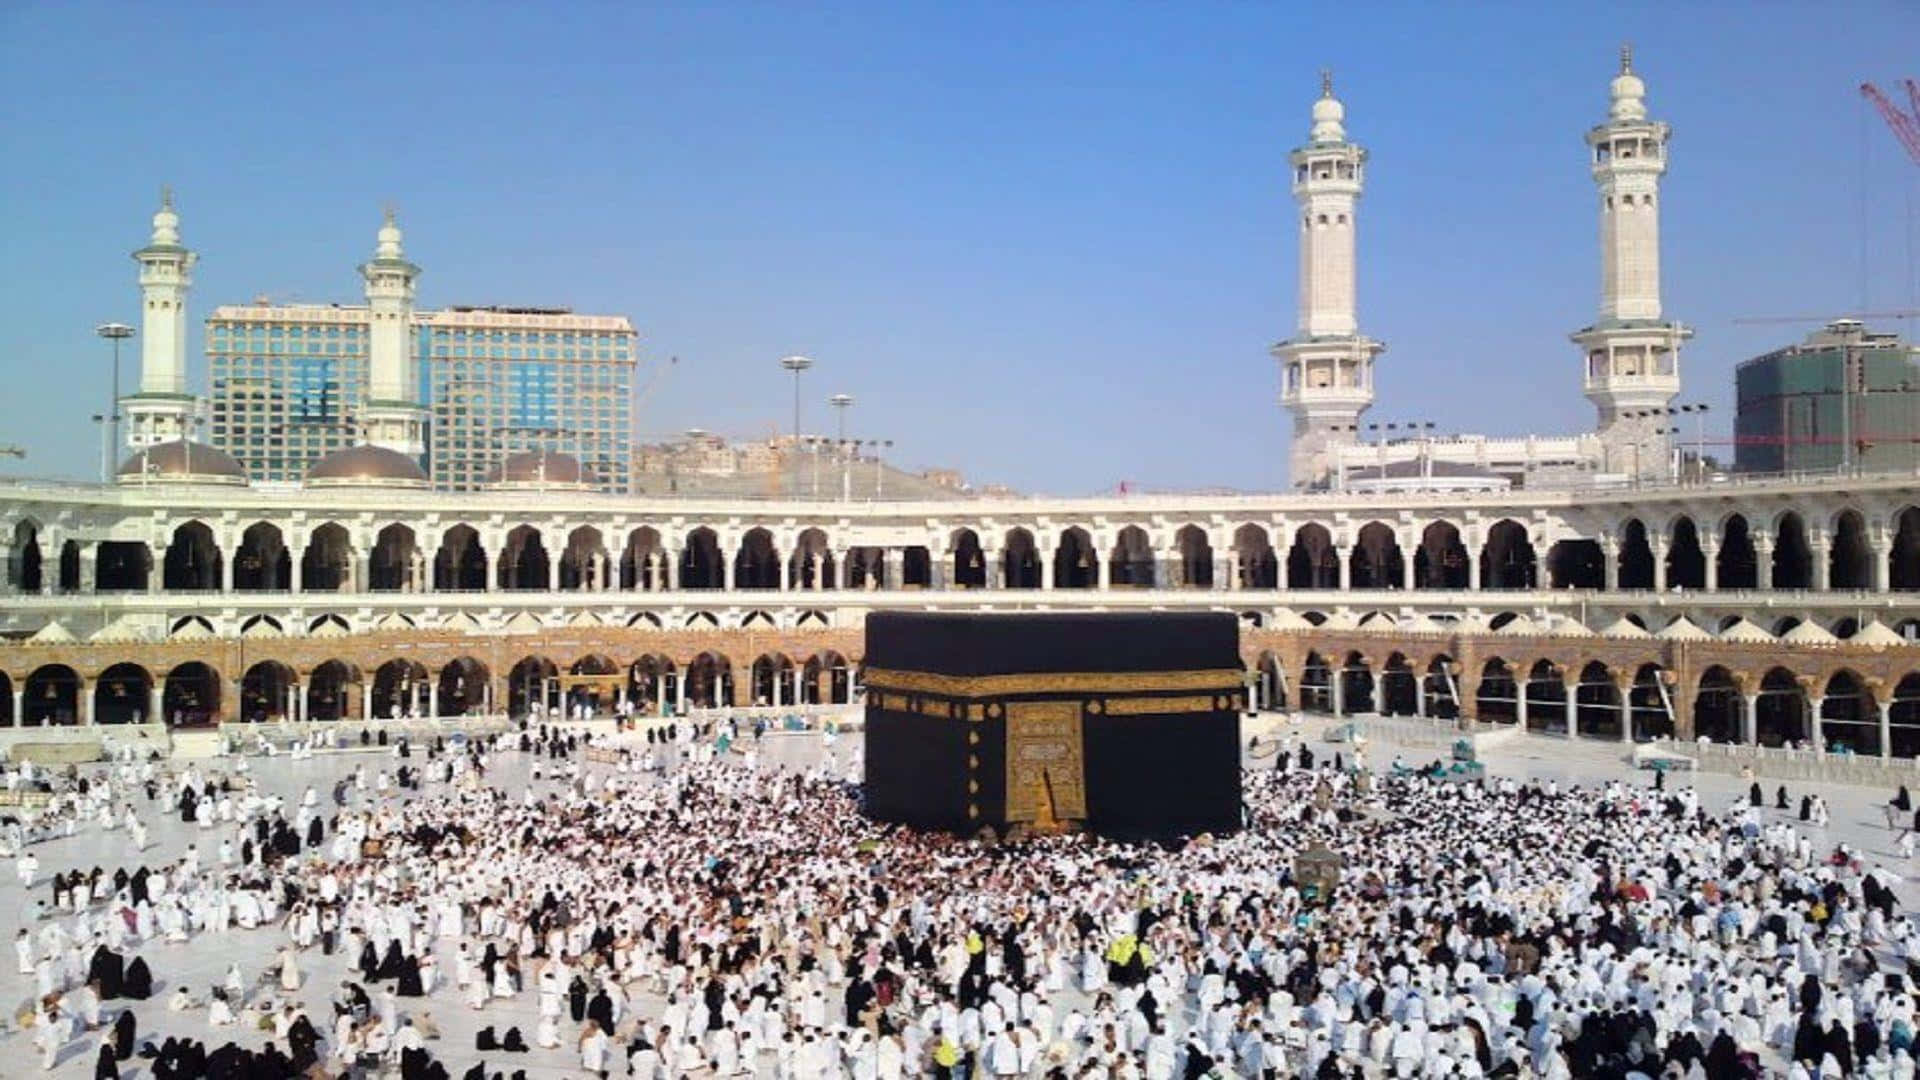 Einegroße Gruppe Von Menschen Steht Um Die Kaaba Herum.